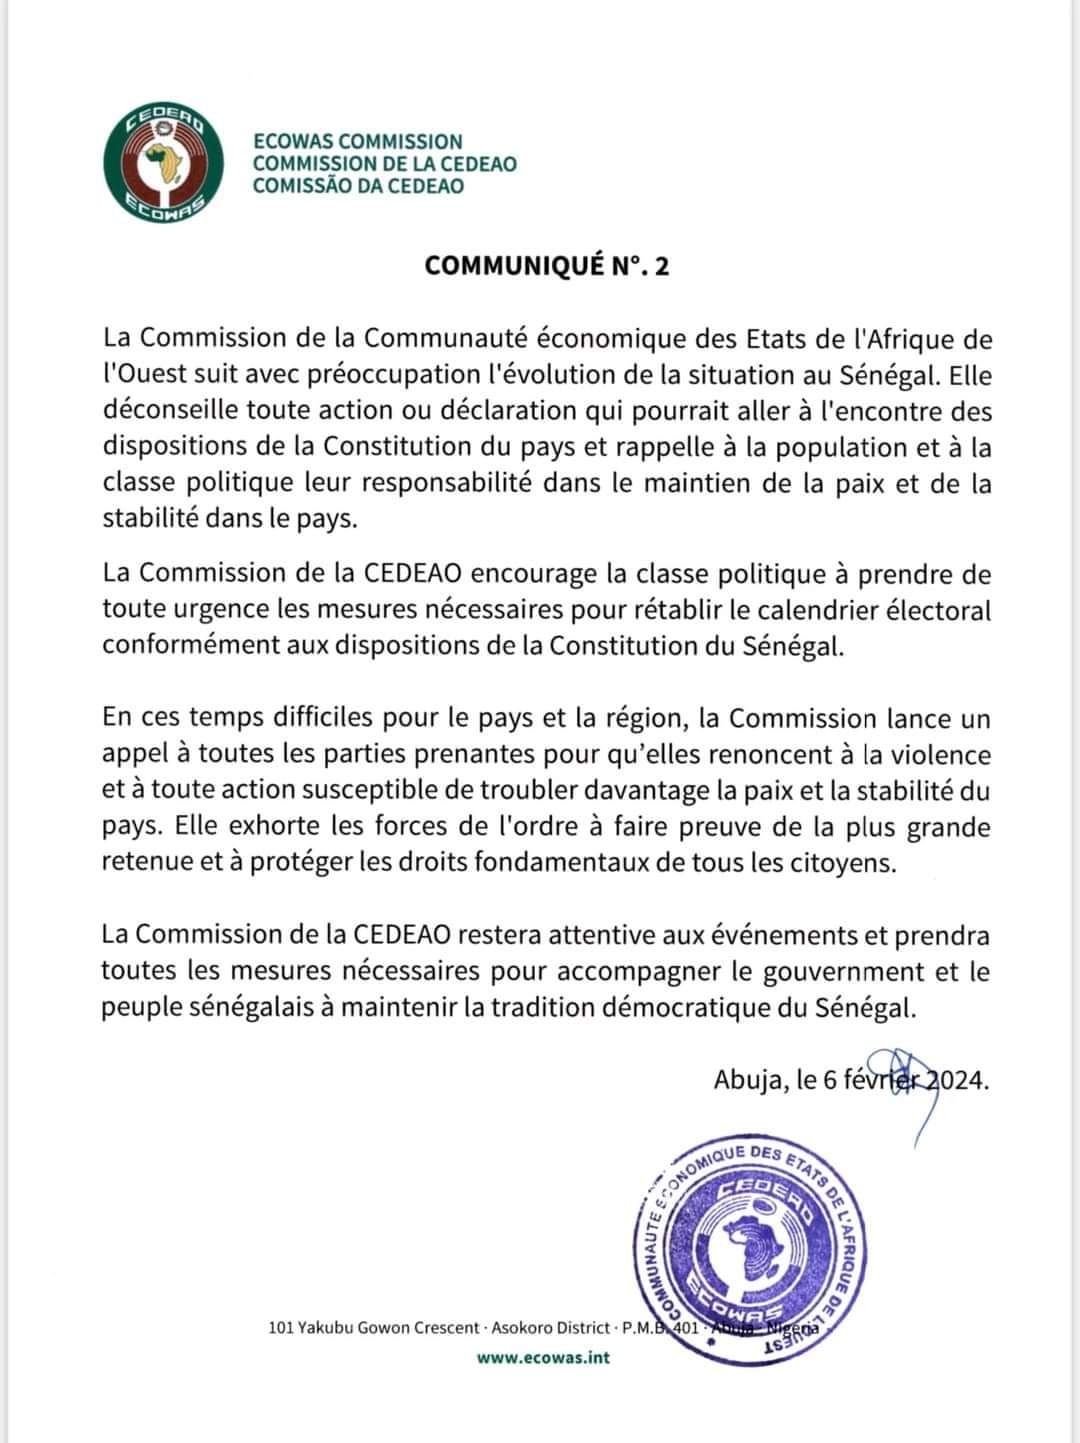 Sénégal: La CEDEAO demande à la classe politique de « rétablir le calendrier électoral